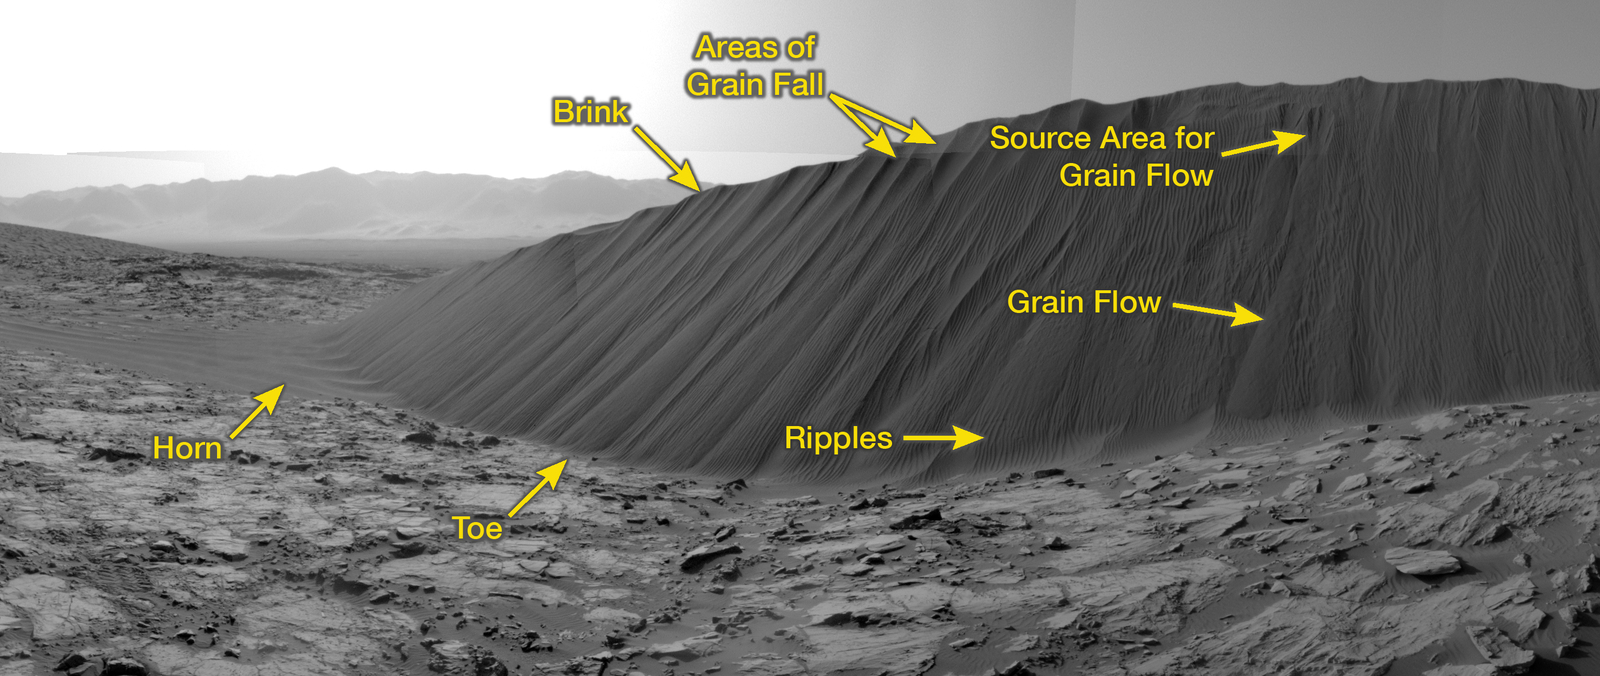 Slip face on Downwind Side of 'Namib' Sand Dune on Mars